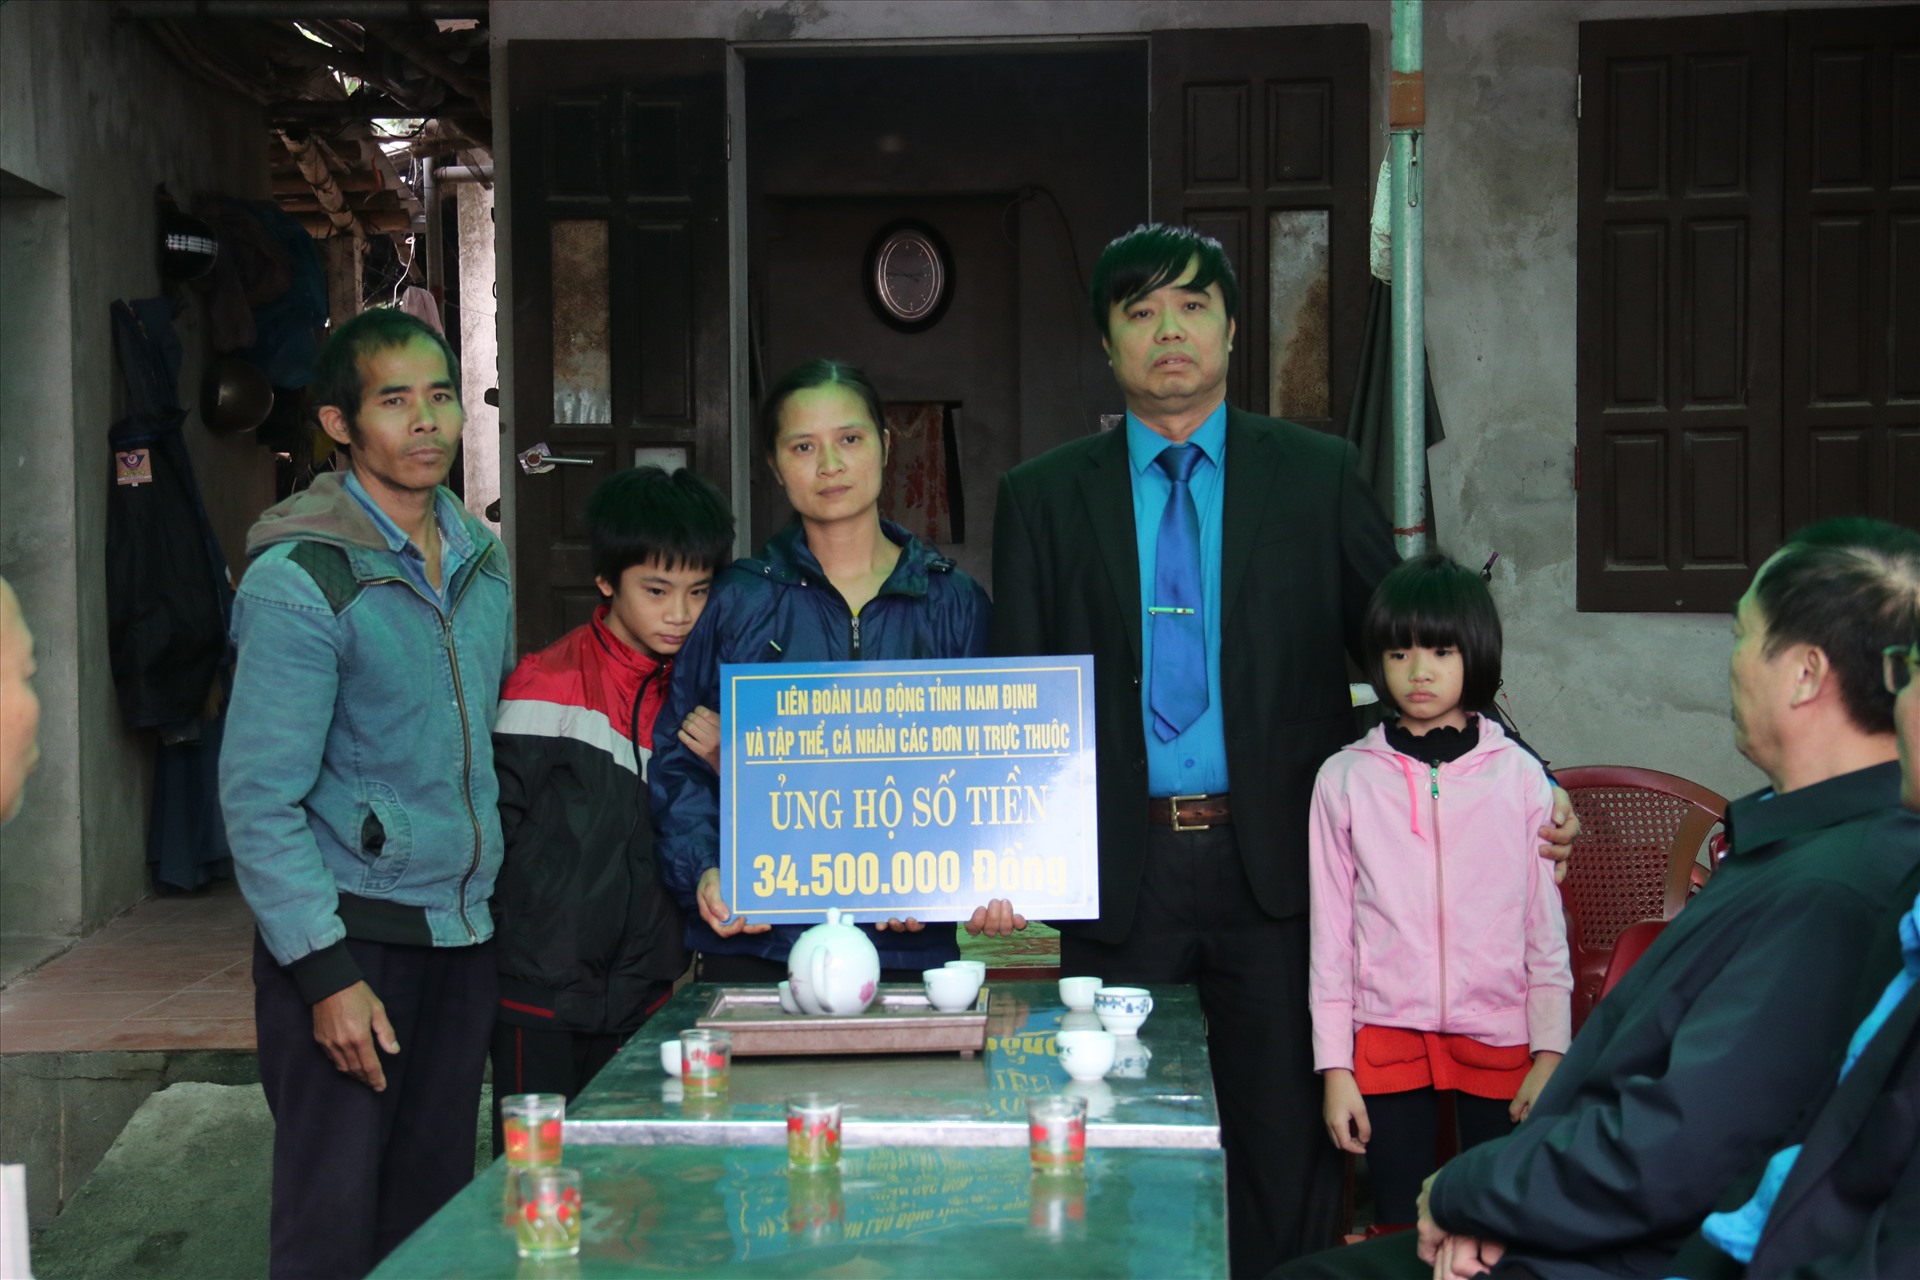 Đồng chí Trần Trọng Thái - Phó Chủ tịch Thường trực tỉnh Nam Định - trao tiền hỗ trợ cho gia đình chị Hảo.